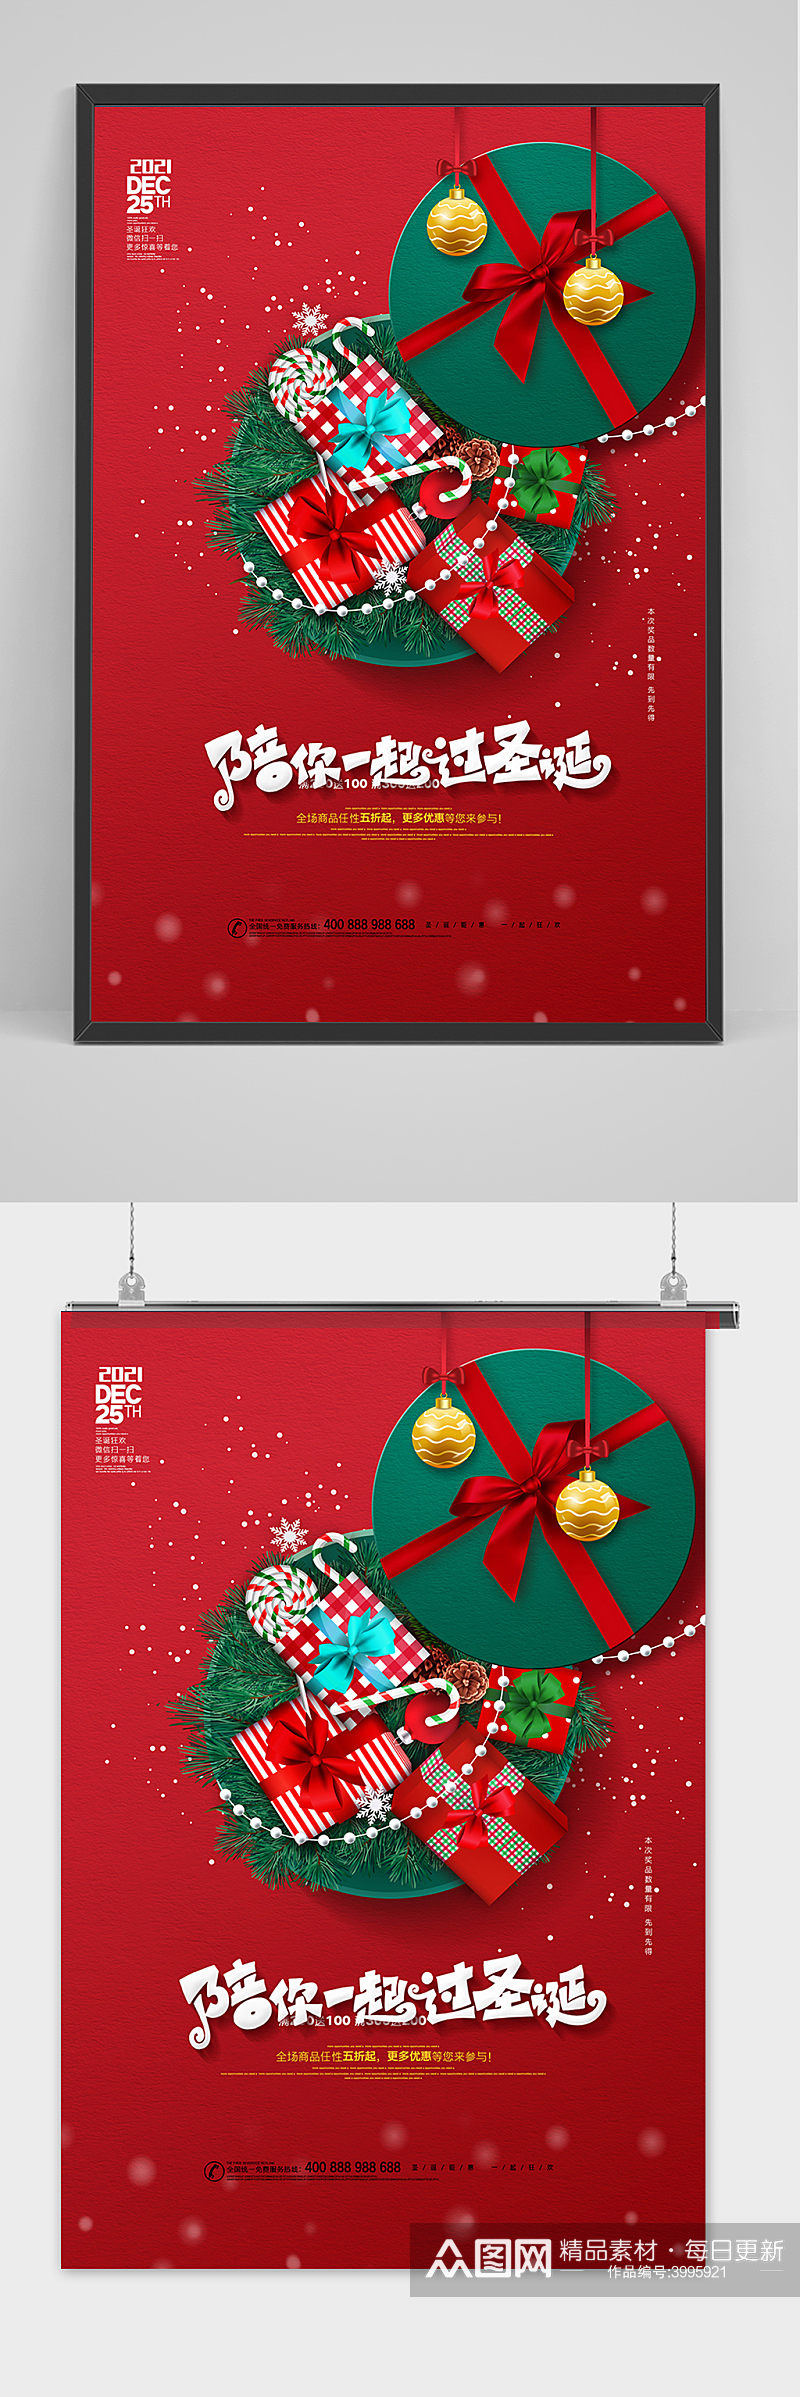 大气红色圣诞节商场通用促销海报素材